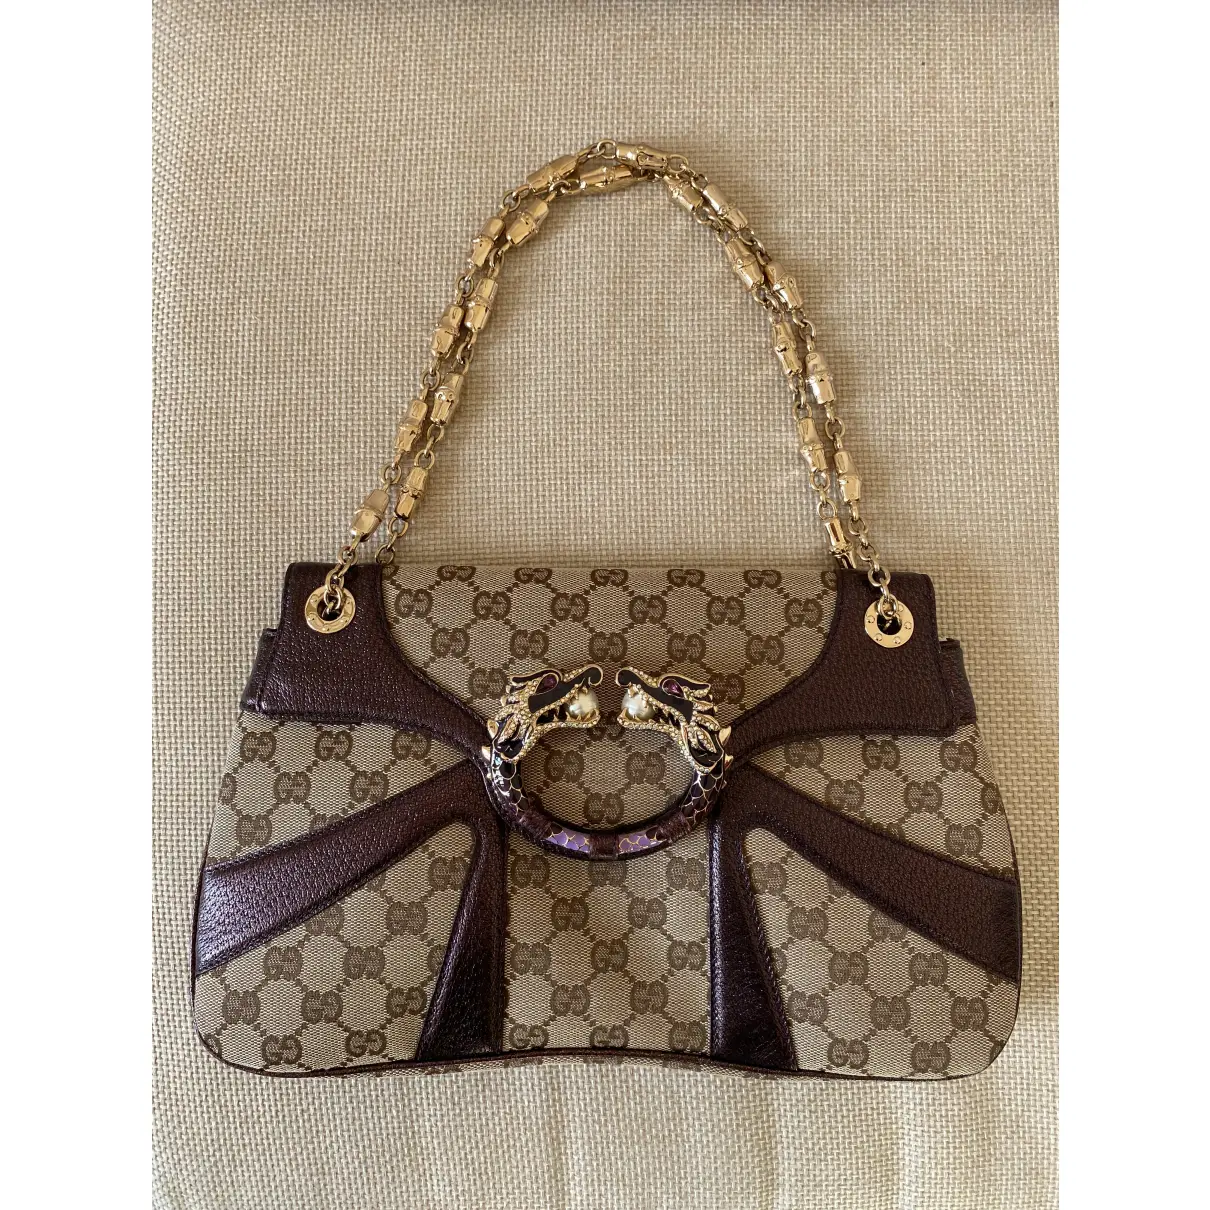 Gucci Cloth handbag for sale - Vintage